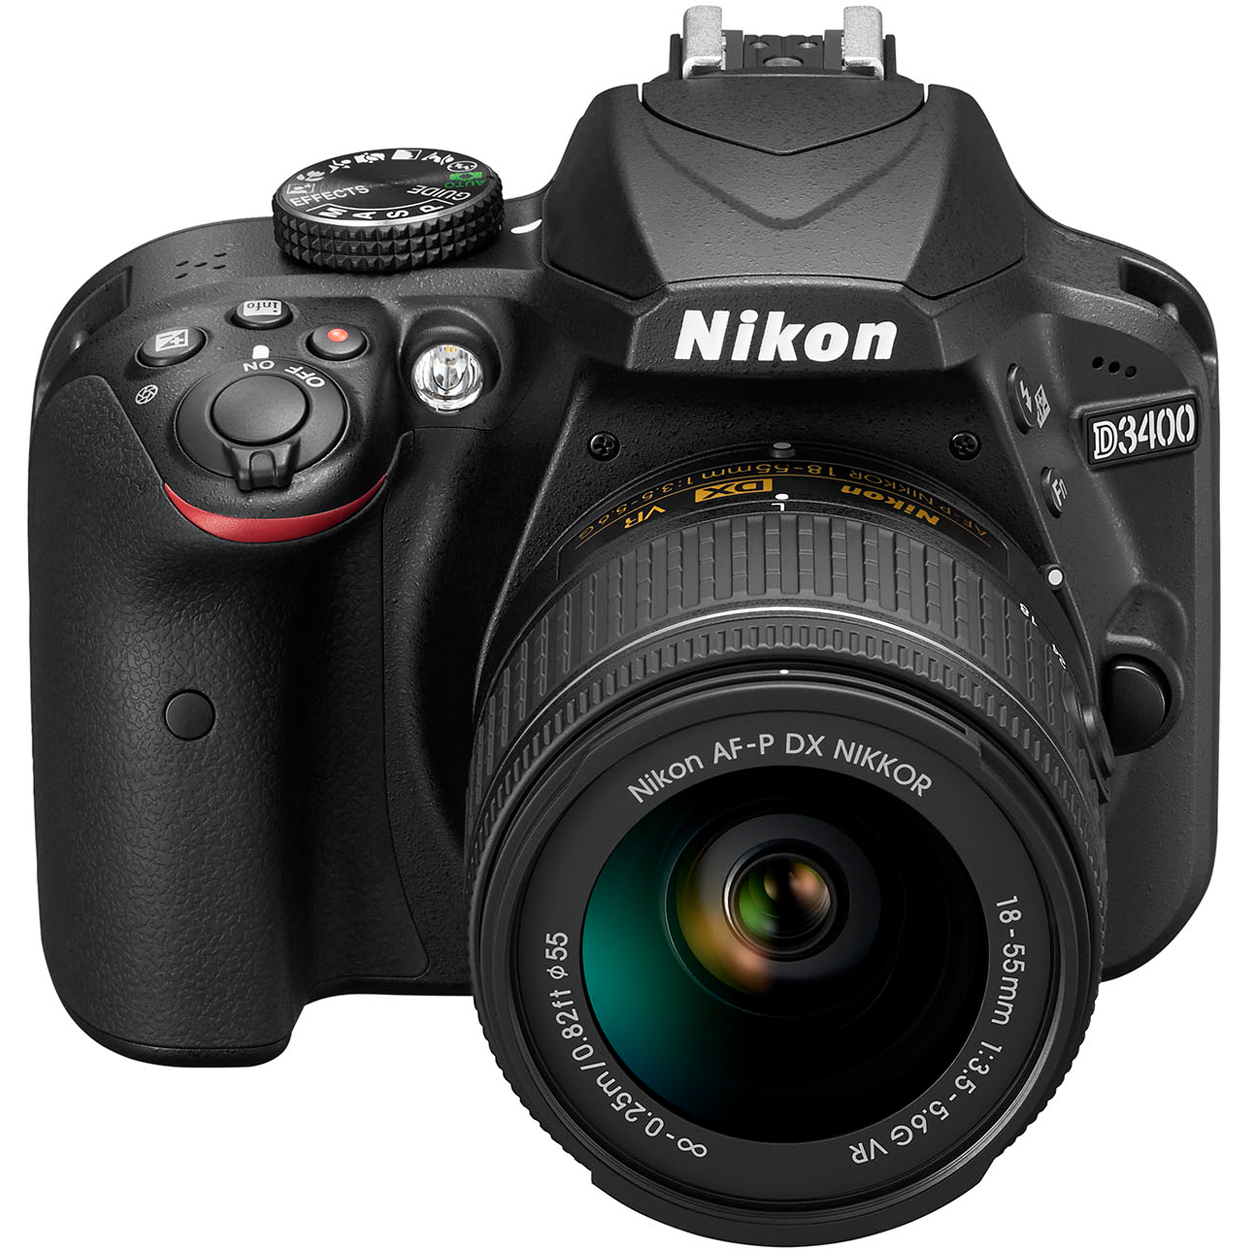 Nikon D3400/D3500 DSLR Camera with 18:55mm Lens (Black) & Sigma 70:300mm SLD DG Lens Package, Black Bundle 64GB SDXC Memory Card Supreme Bundle - image 4 of 10